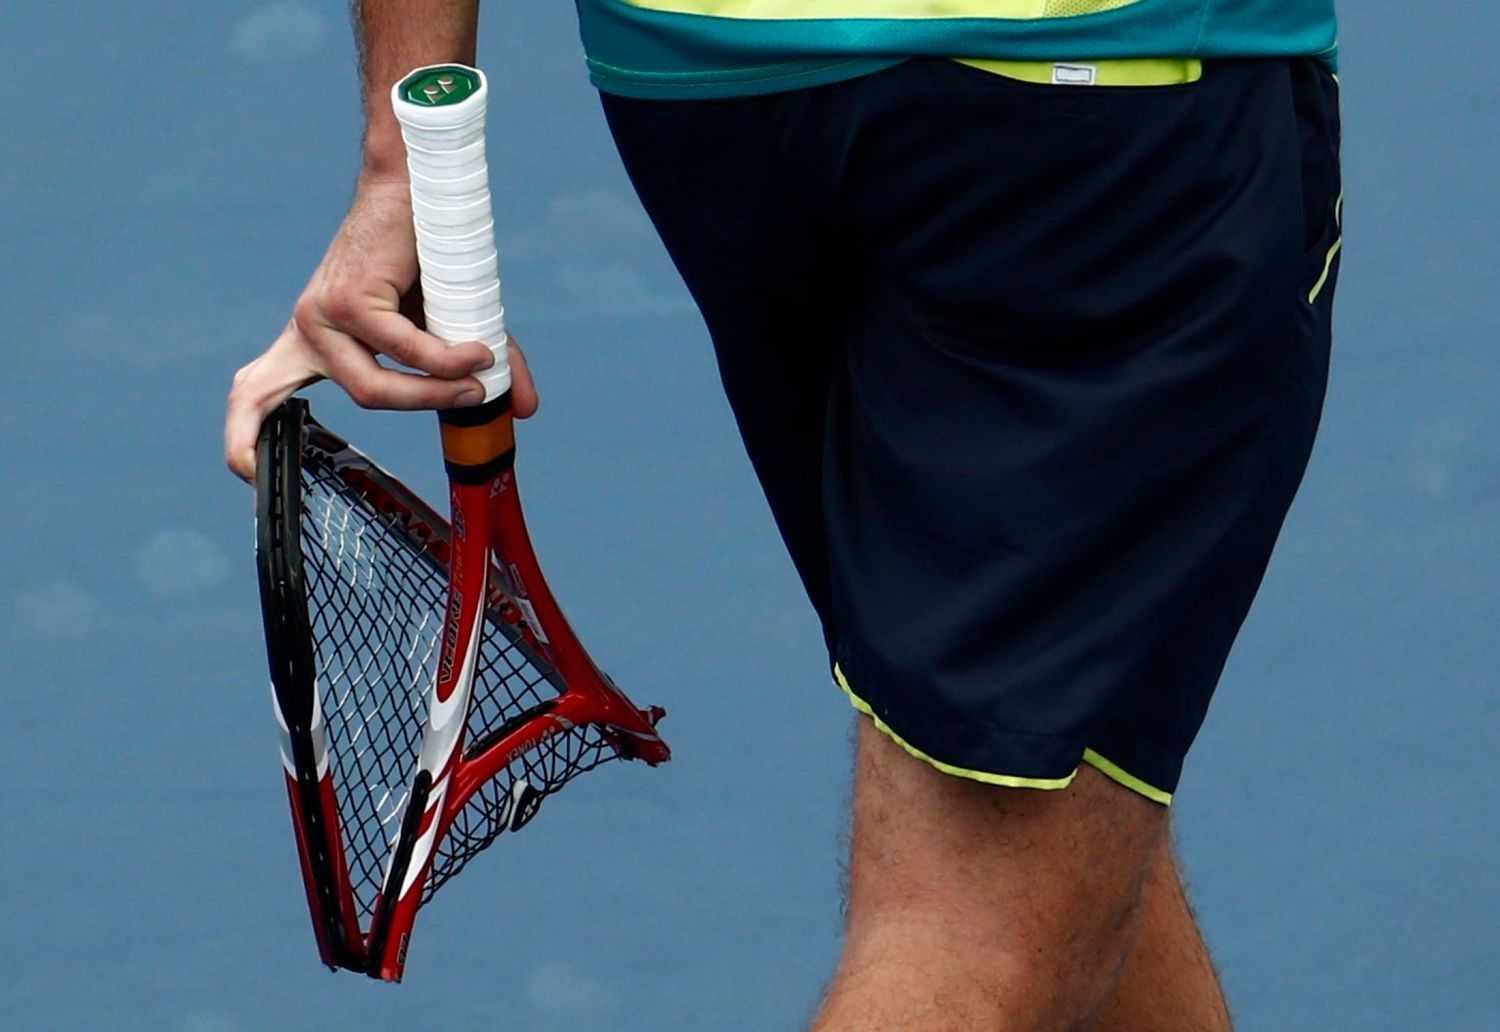 Švýcarský tenista Stanislas Wawrinka rozbil svojí raketu po prohře se Srbem Novakem Djokovičem na US Open 2012.